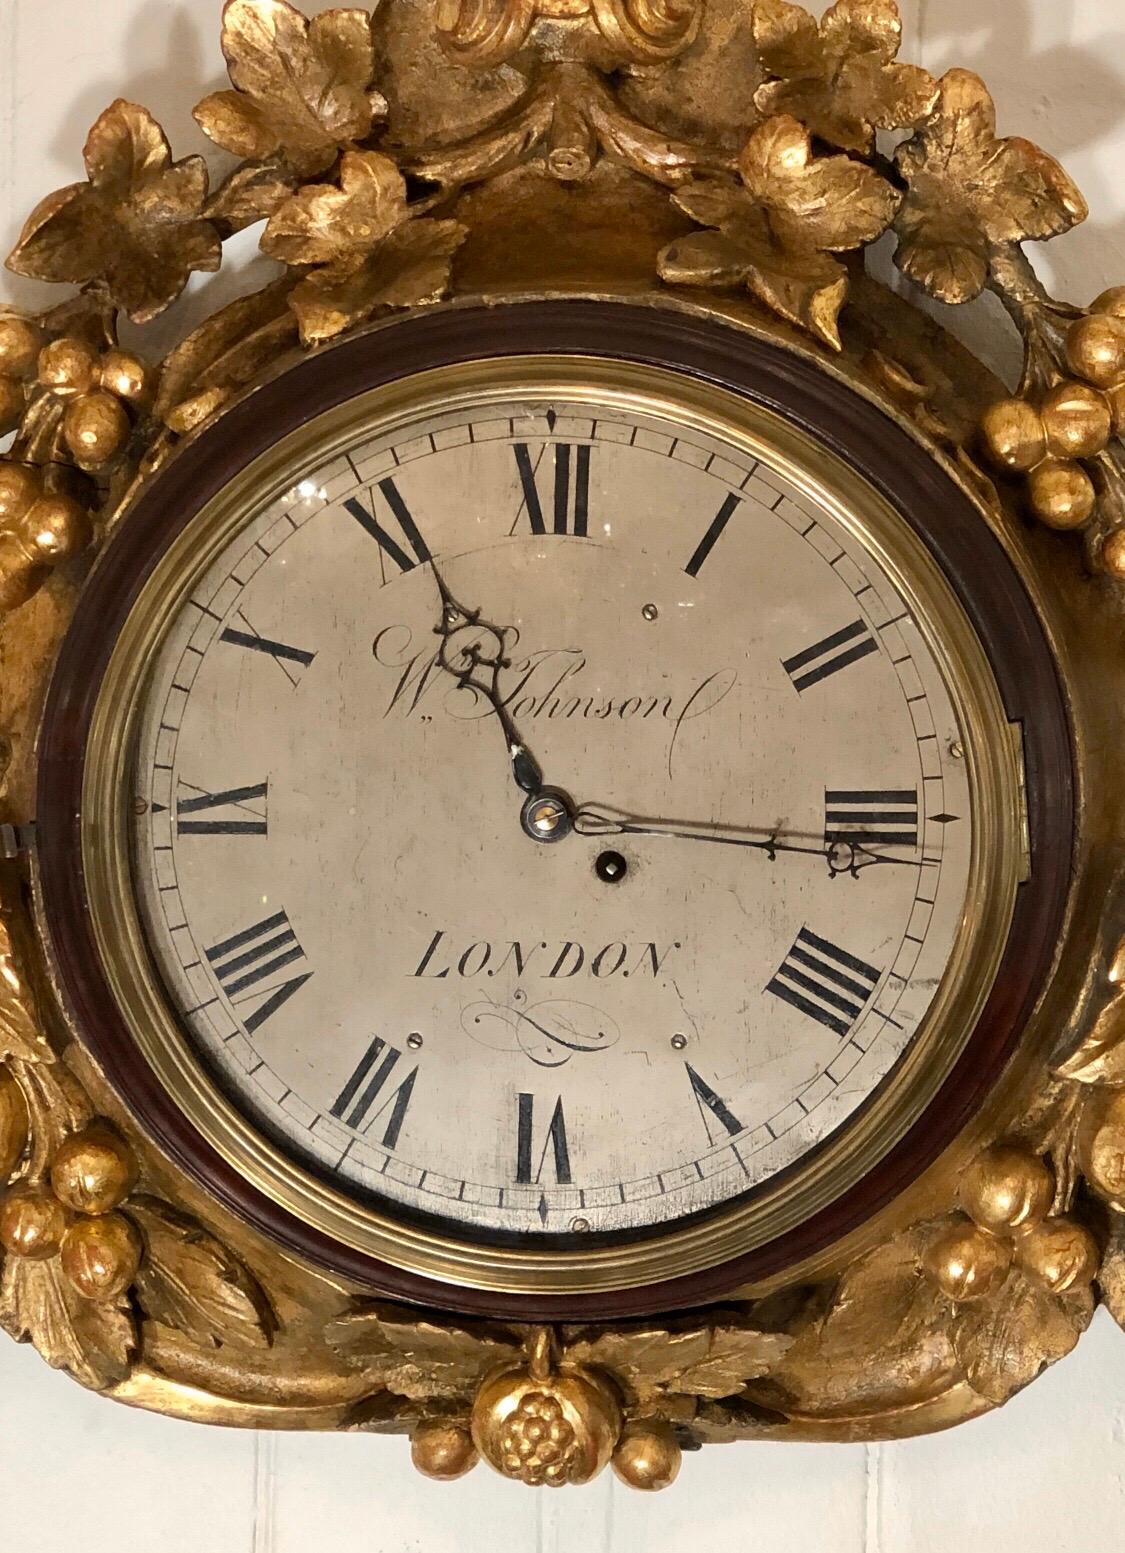 Wichtige englische Regency-Wanduhr aus vergoldetem Holz mit Mahagoniring, der die konvexe Glastür mit geformter Messingeinfassung hält. Das zwölf Zoll große, gravierte und versilberte Zifferblatt ist mit Wm. Johnson, LONDON. Die Zeiger der Uhr sind